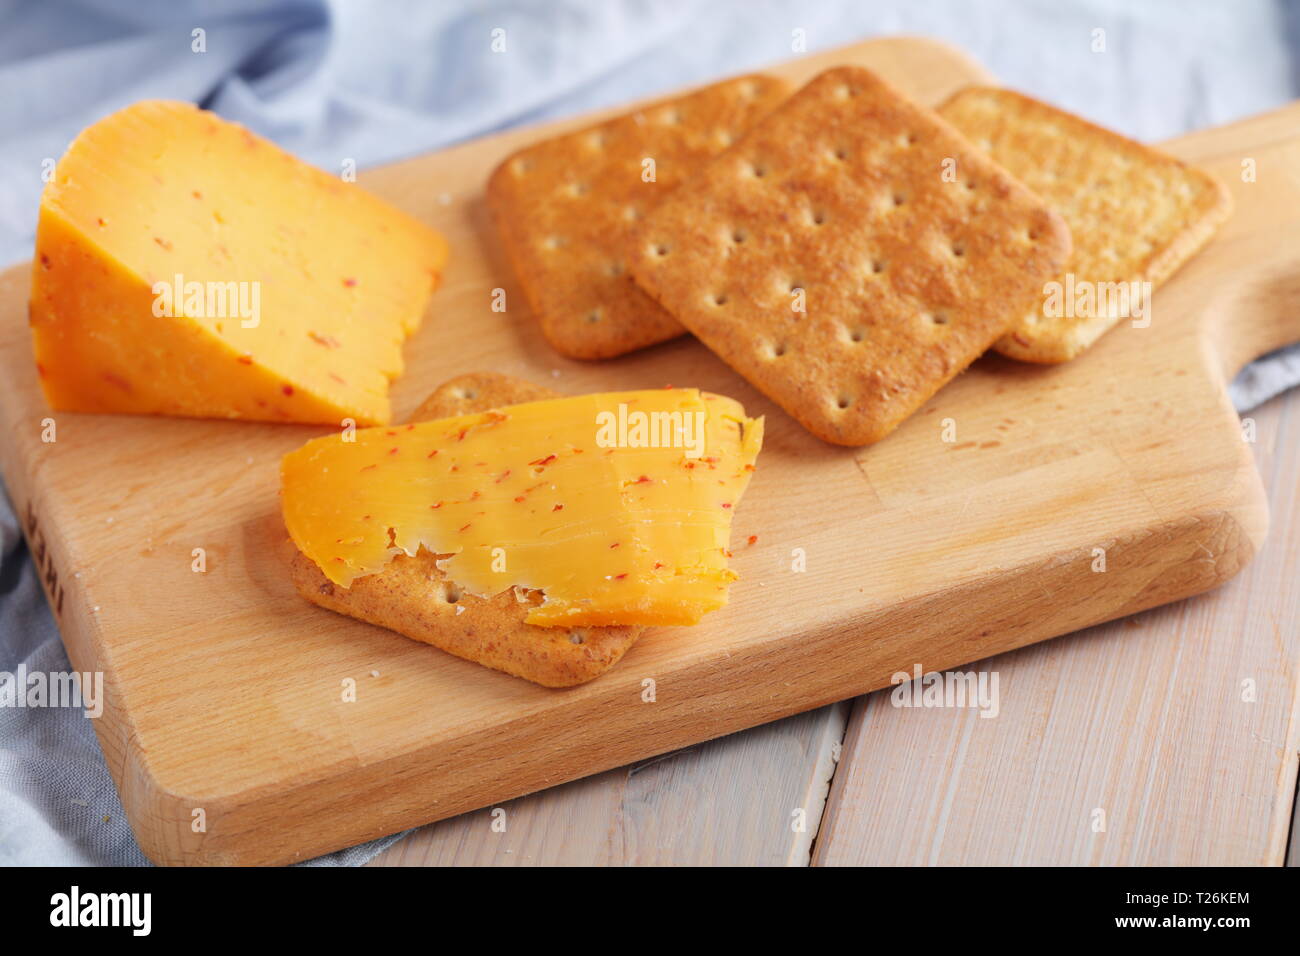 Les craquelins avec du fromage gouda épicé et une tranche de fromage sur une planche en bois Banque D'Images